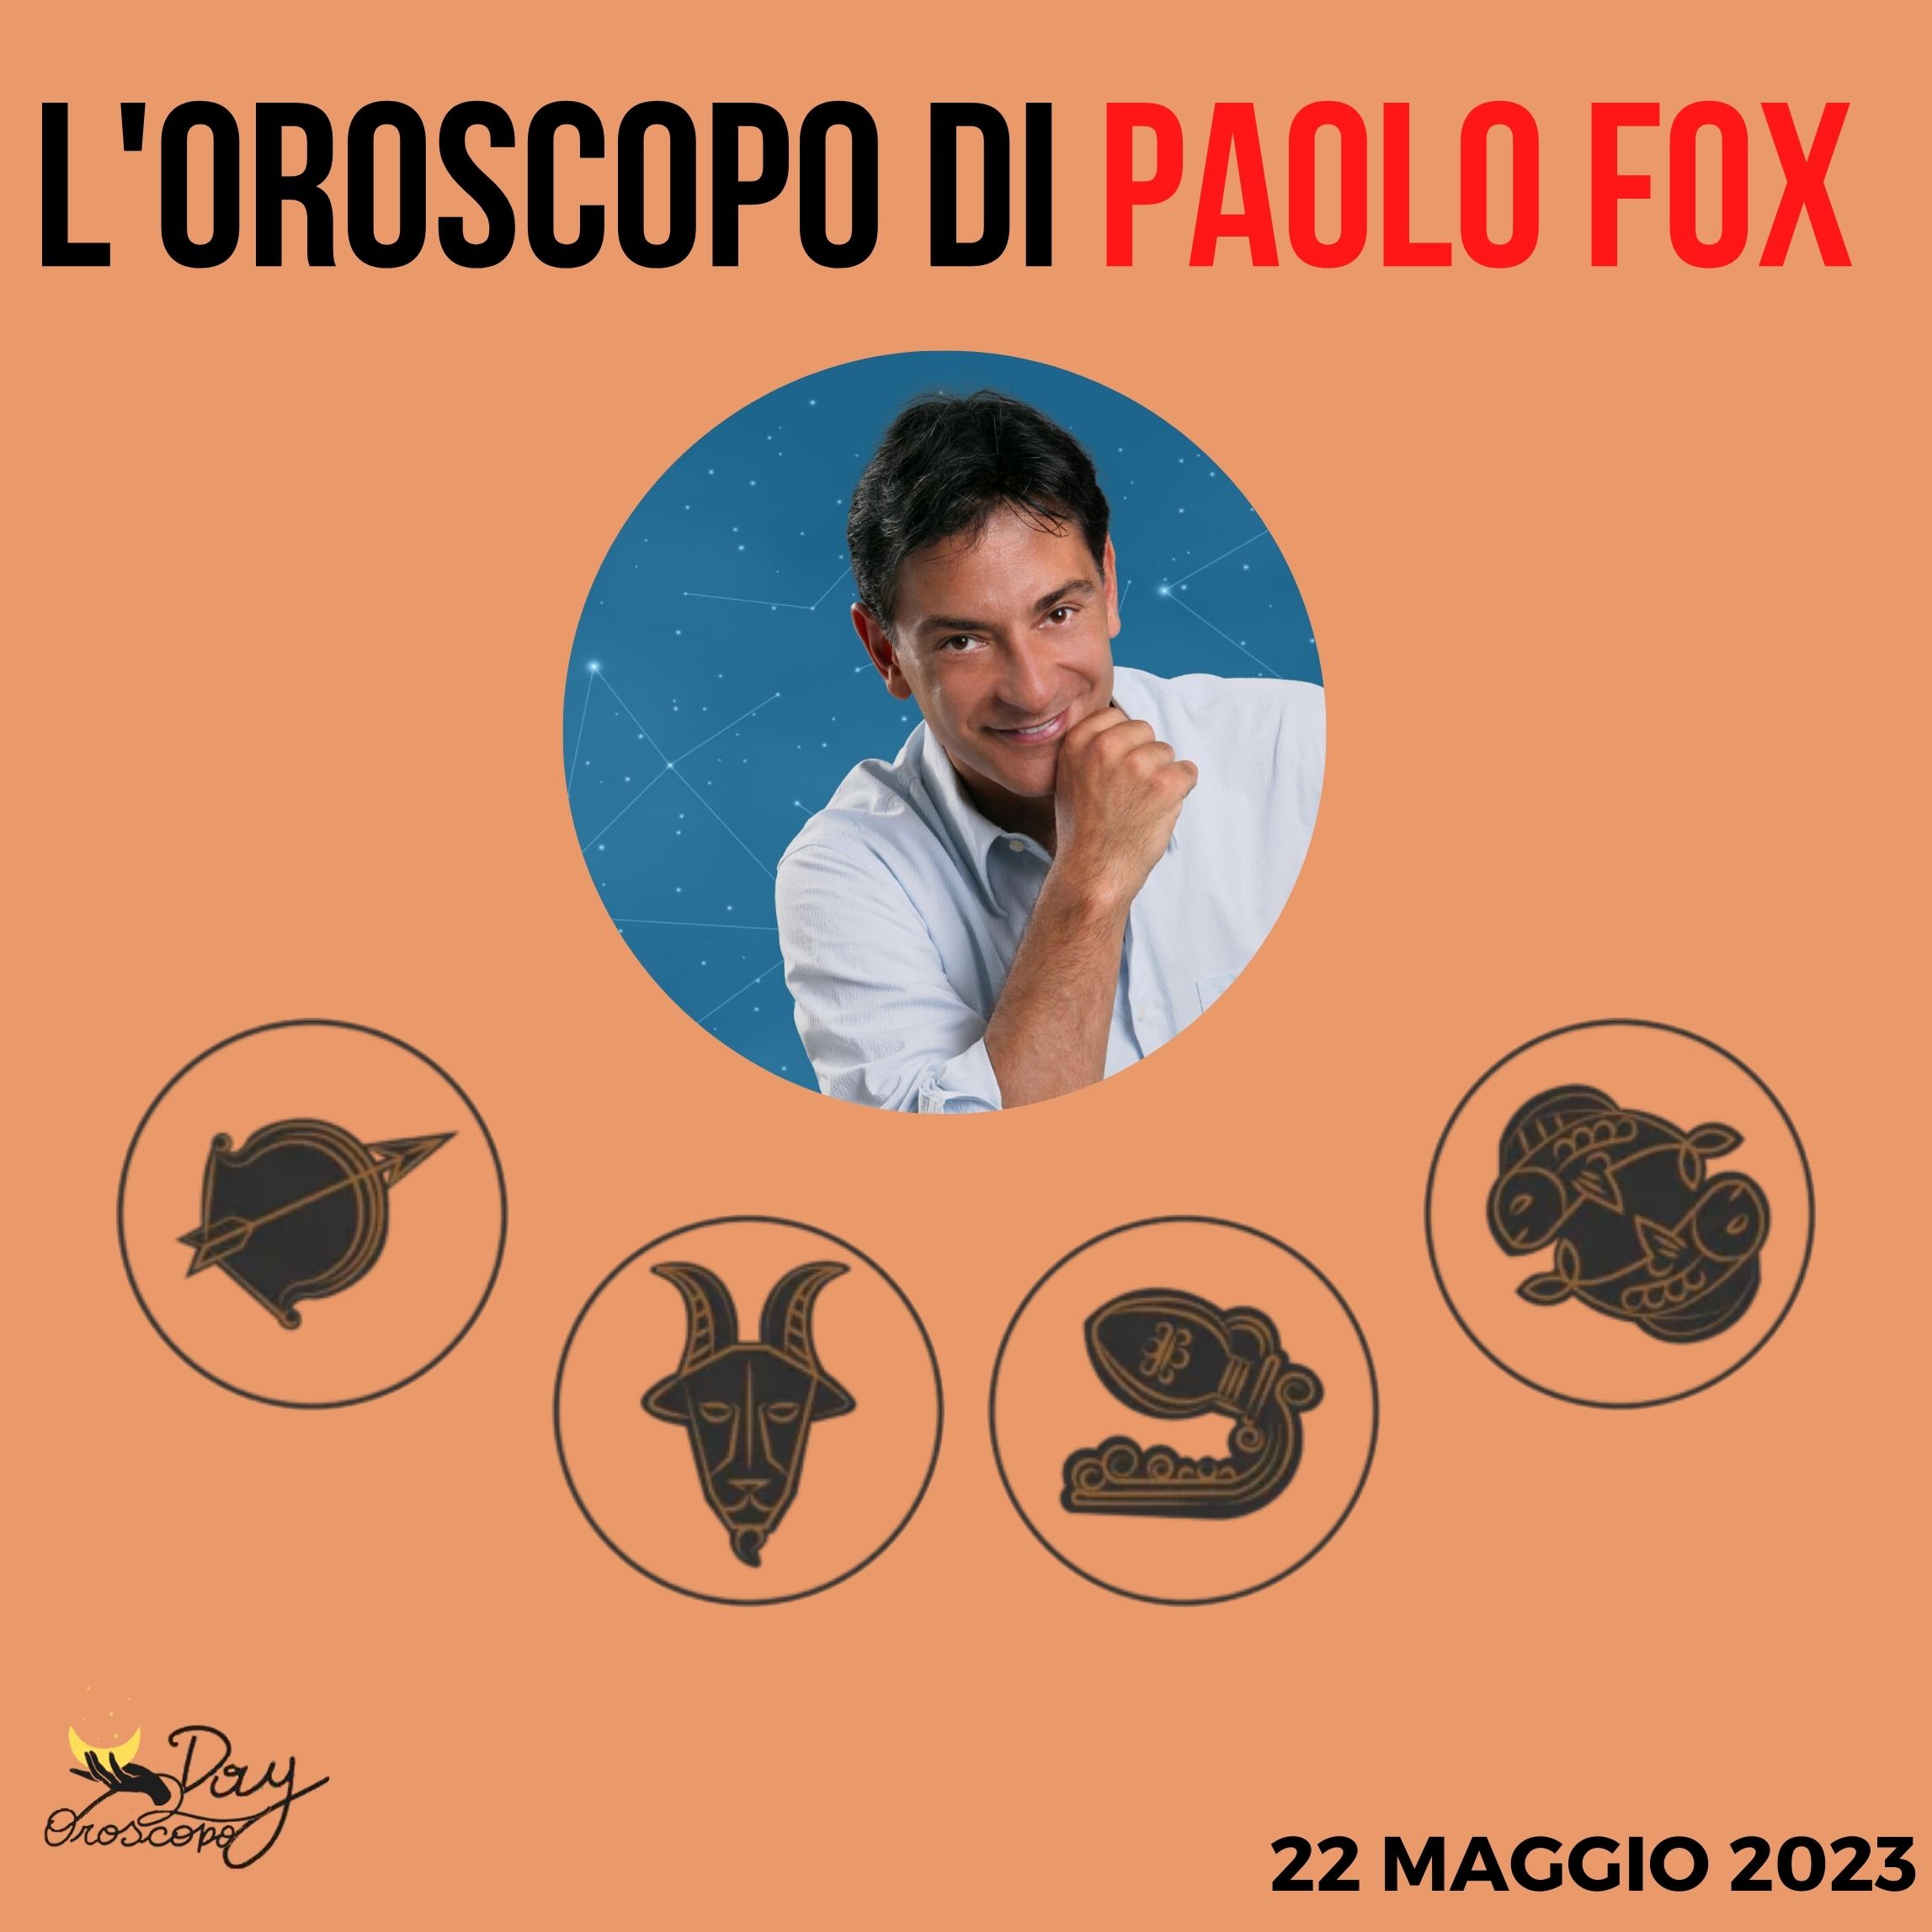 Oroscopo oggi domani Fox 22 maggio Sagittario Capricorno Acquario Pesci